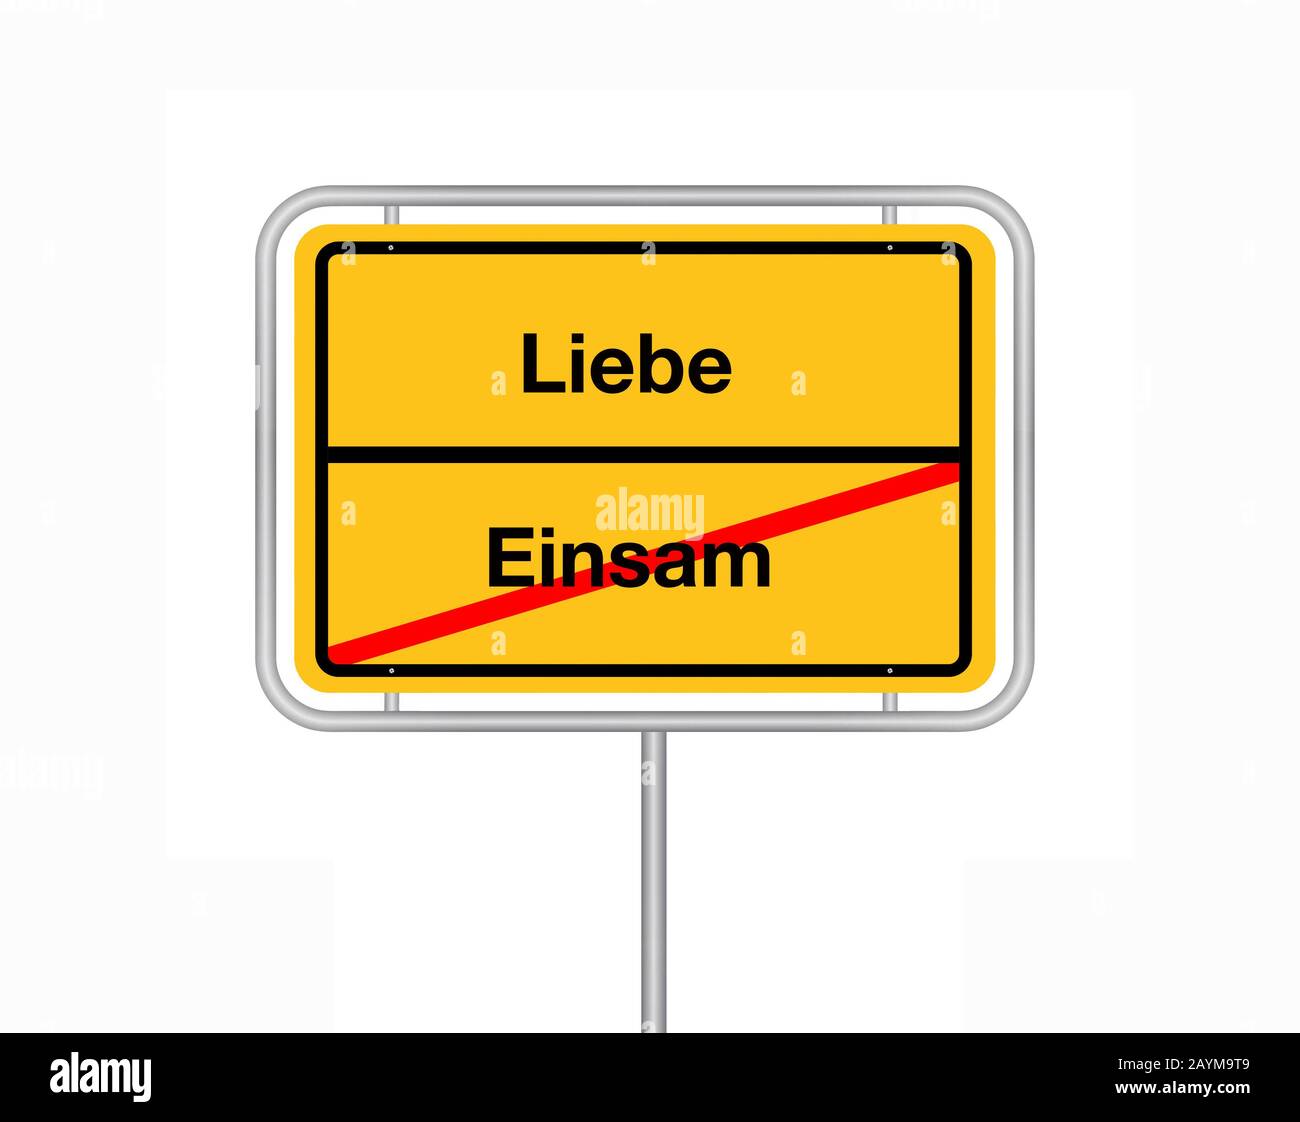 Signo de límite de la ciudad letras einsam - Liebe, solitario - amor, Alemania Foto de stock